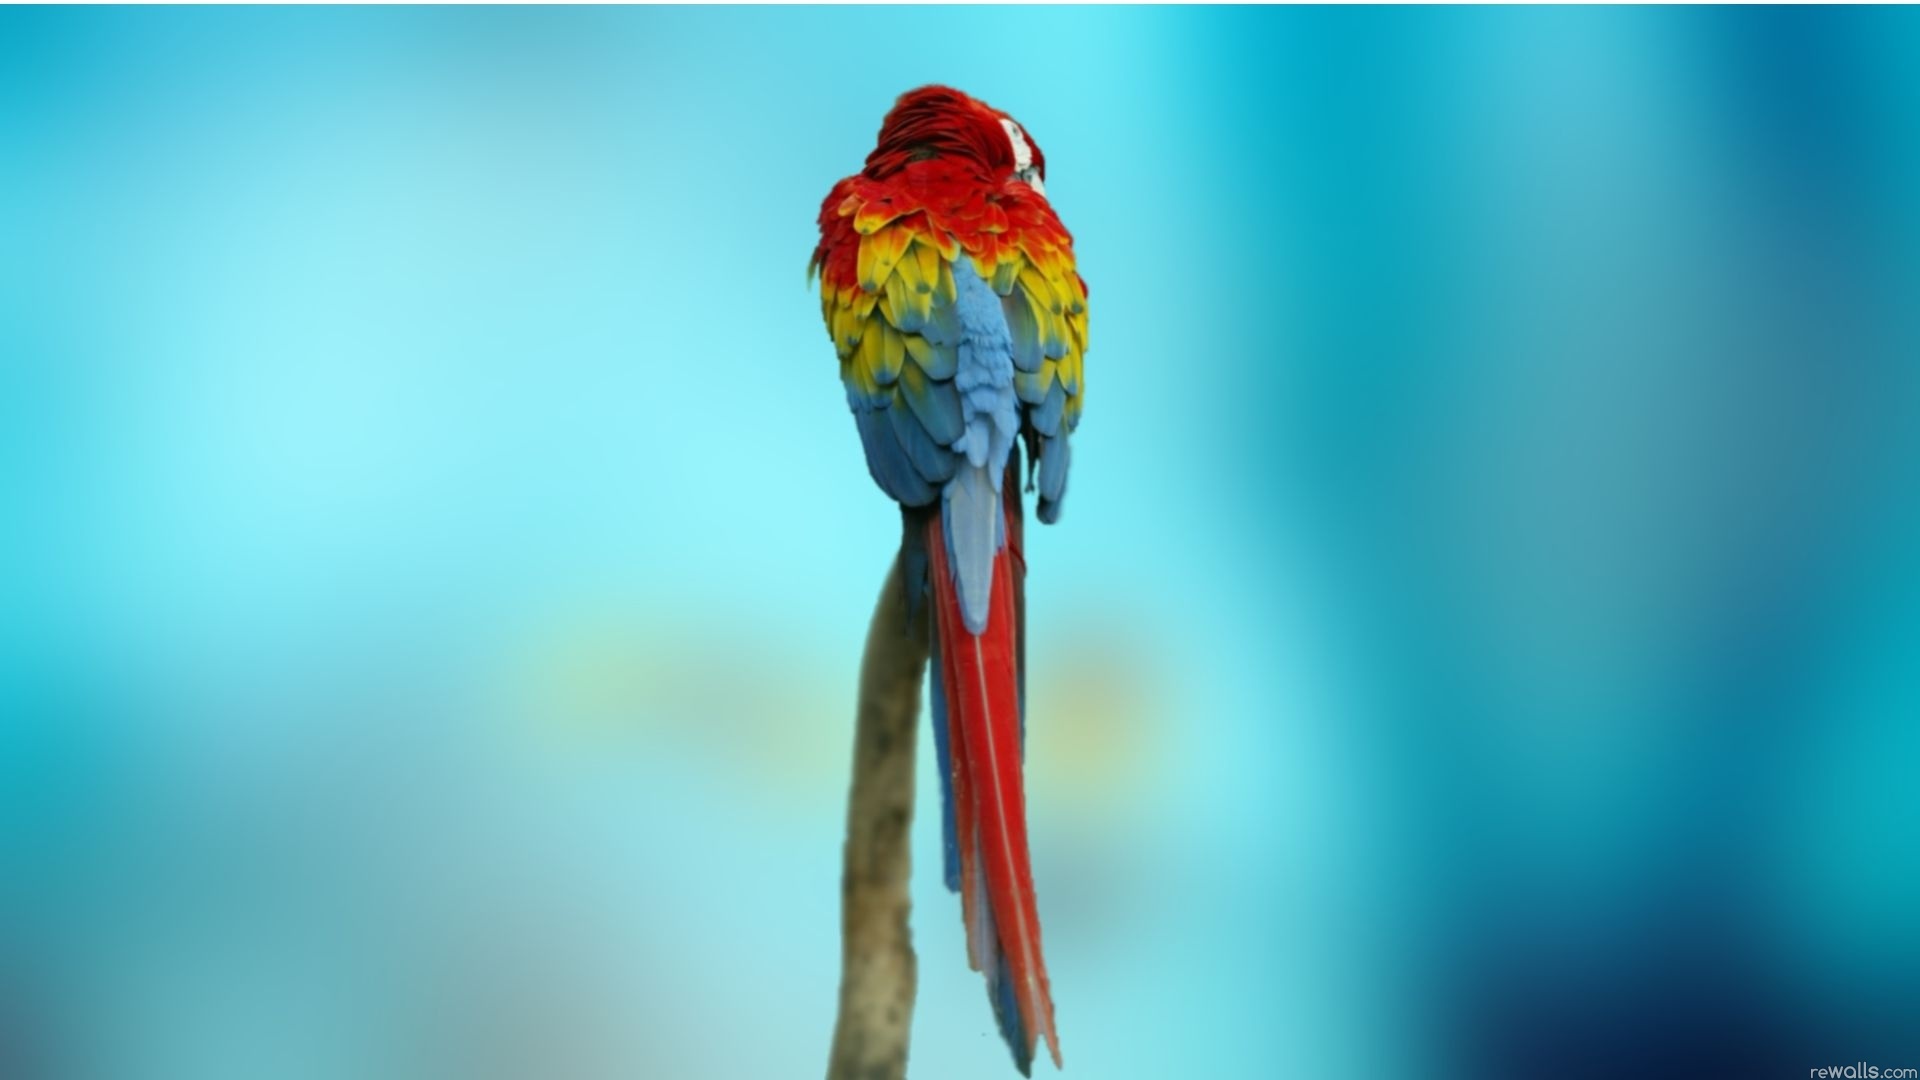 Desktop HD Love Birds Image 3d Colour Design